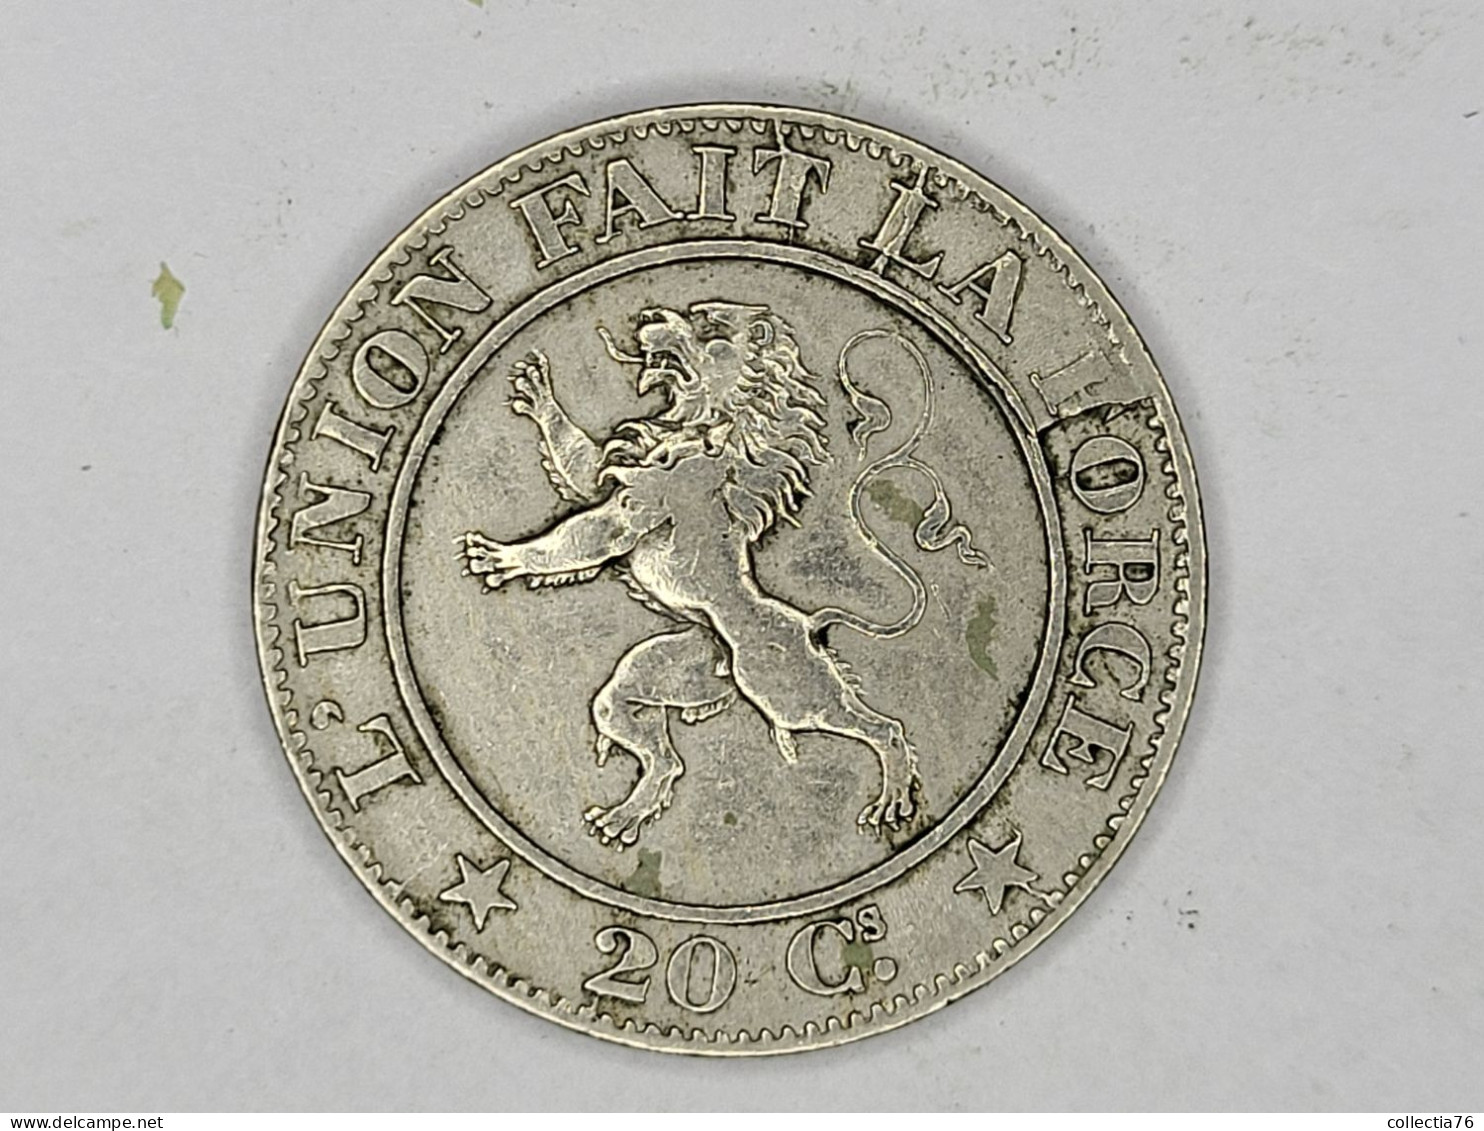 MONNAIE COIN BELGIQUE BELGIE 20 CENTIMES LEOPOLD I 1861 LEGENDE FRANCAISE FAUTE COIN AFFAISSE REVERS - 20 Cent